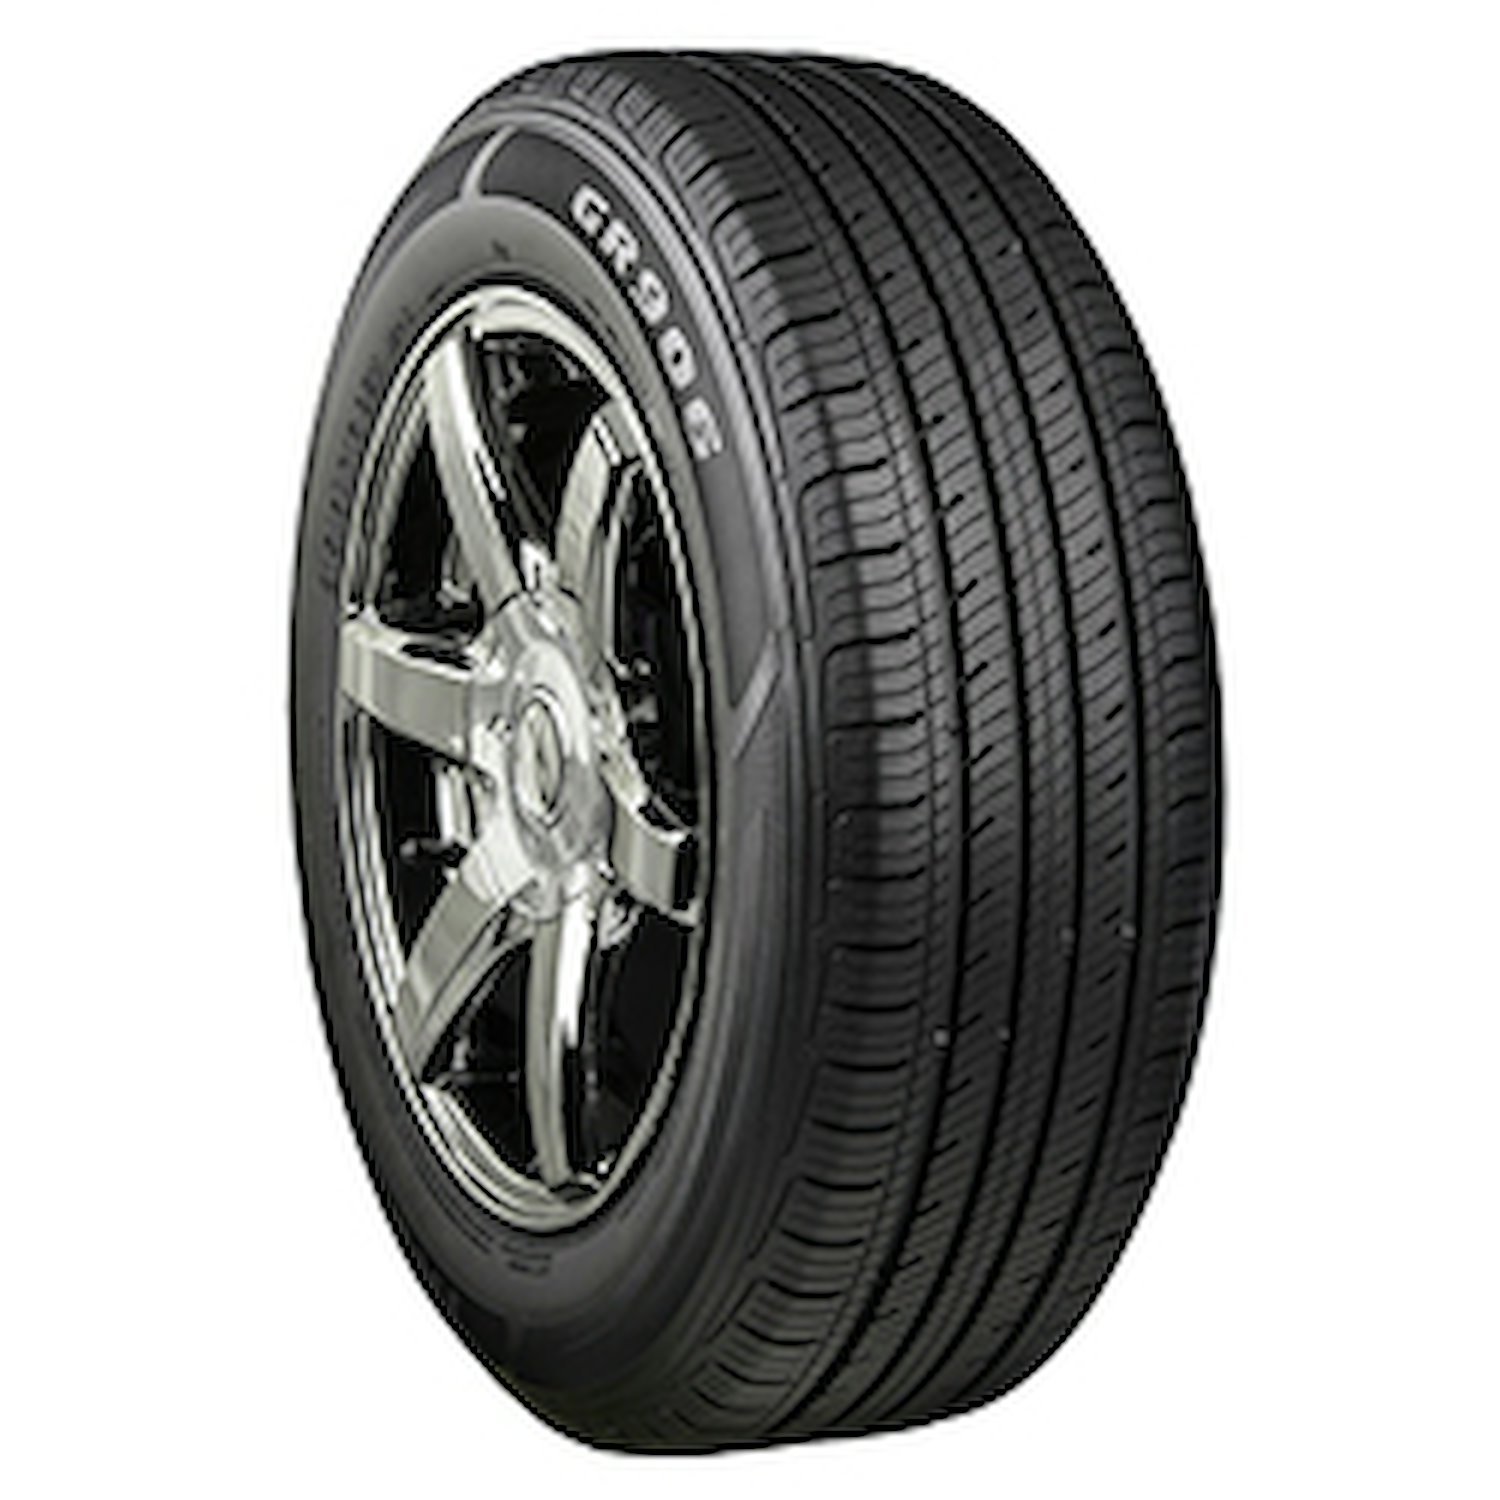 GR906 Tire, 205/60R16 92H